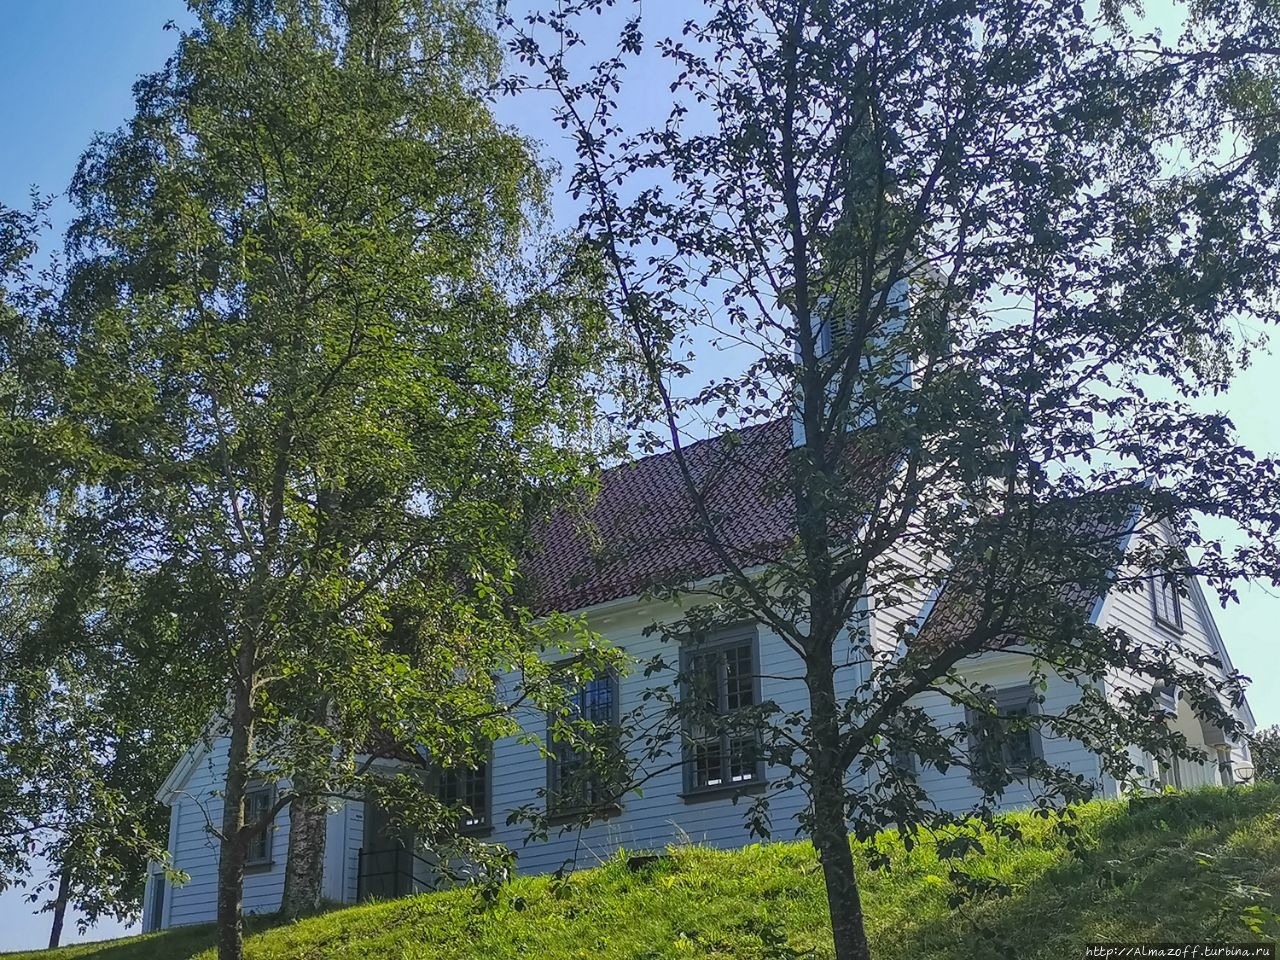 Церковь в Хеггедаль Хеггедаль, Норвегия